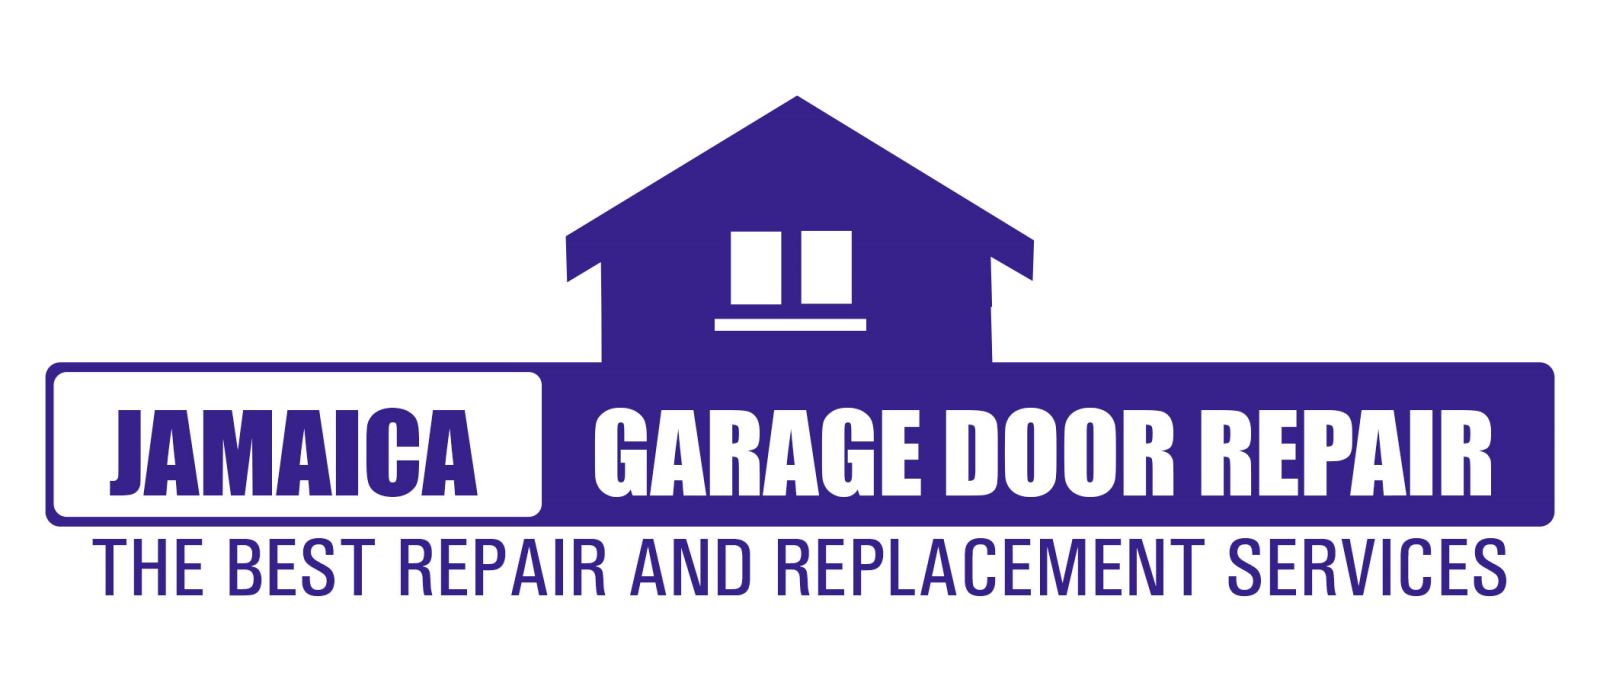 Garage Door Repair Jamaica NY